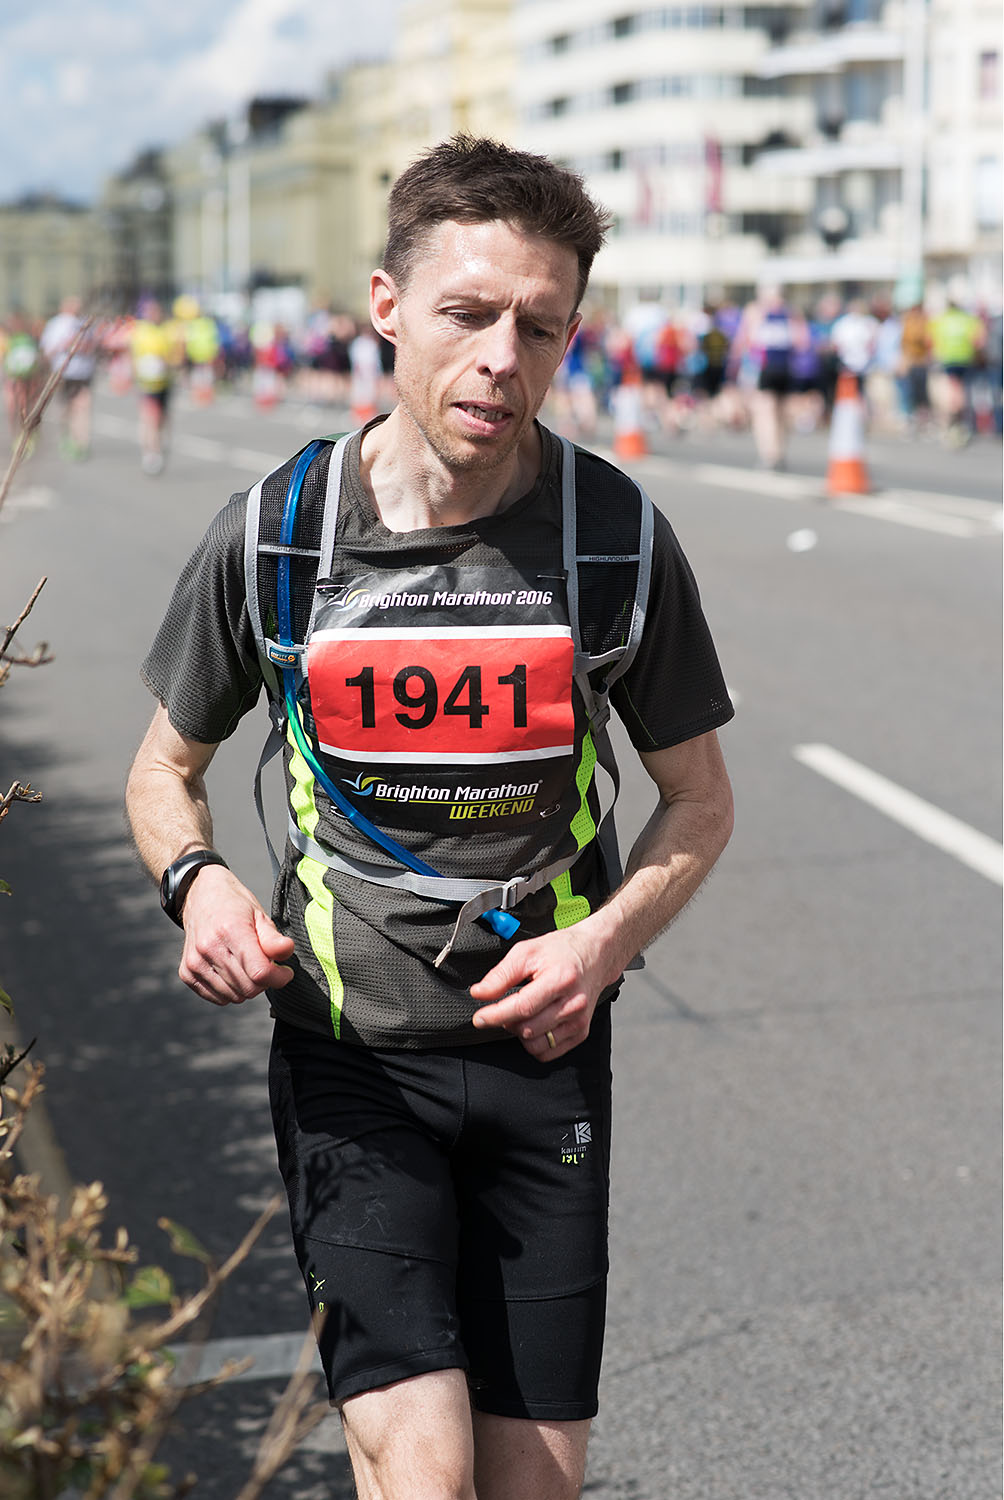  Brighton Marathon 2016 - Mile 25 